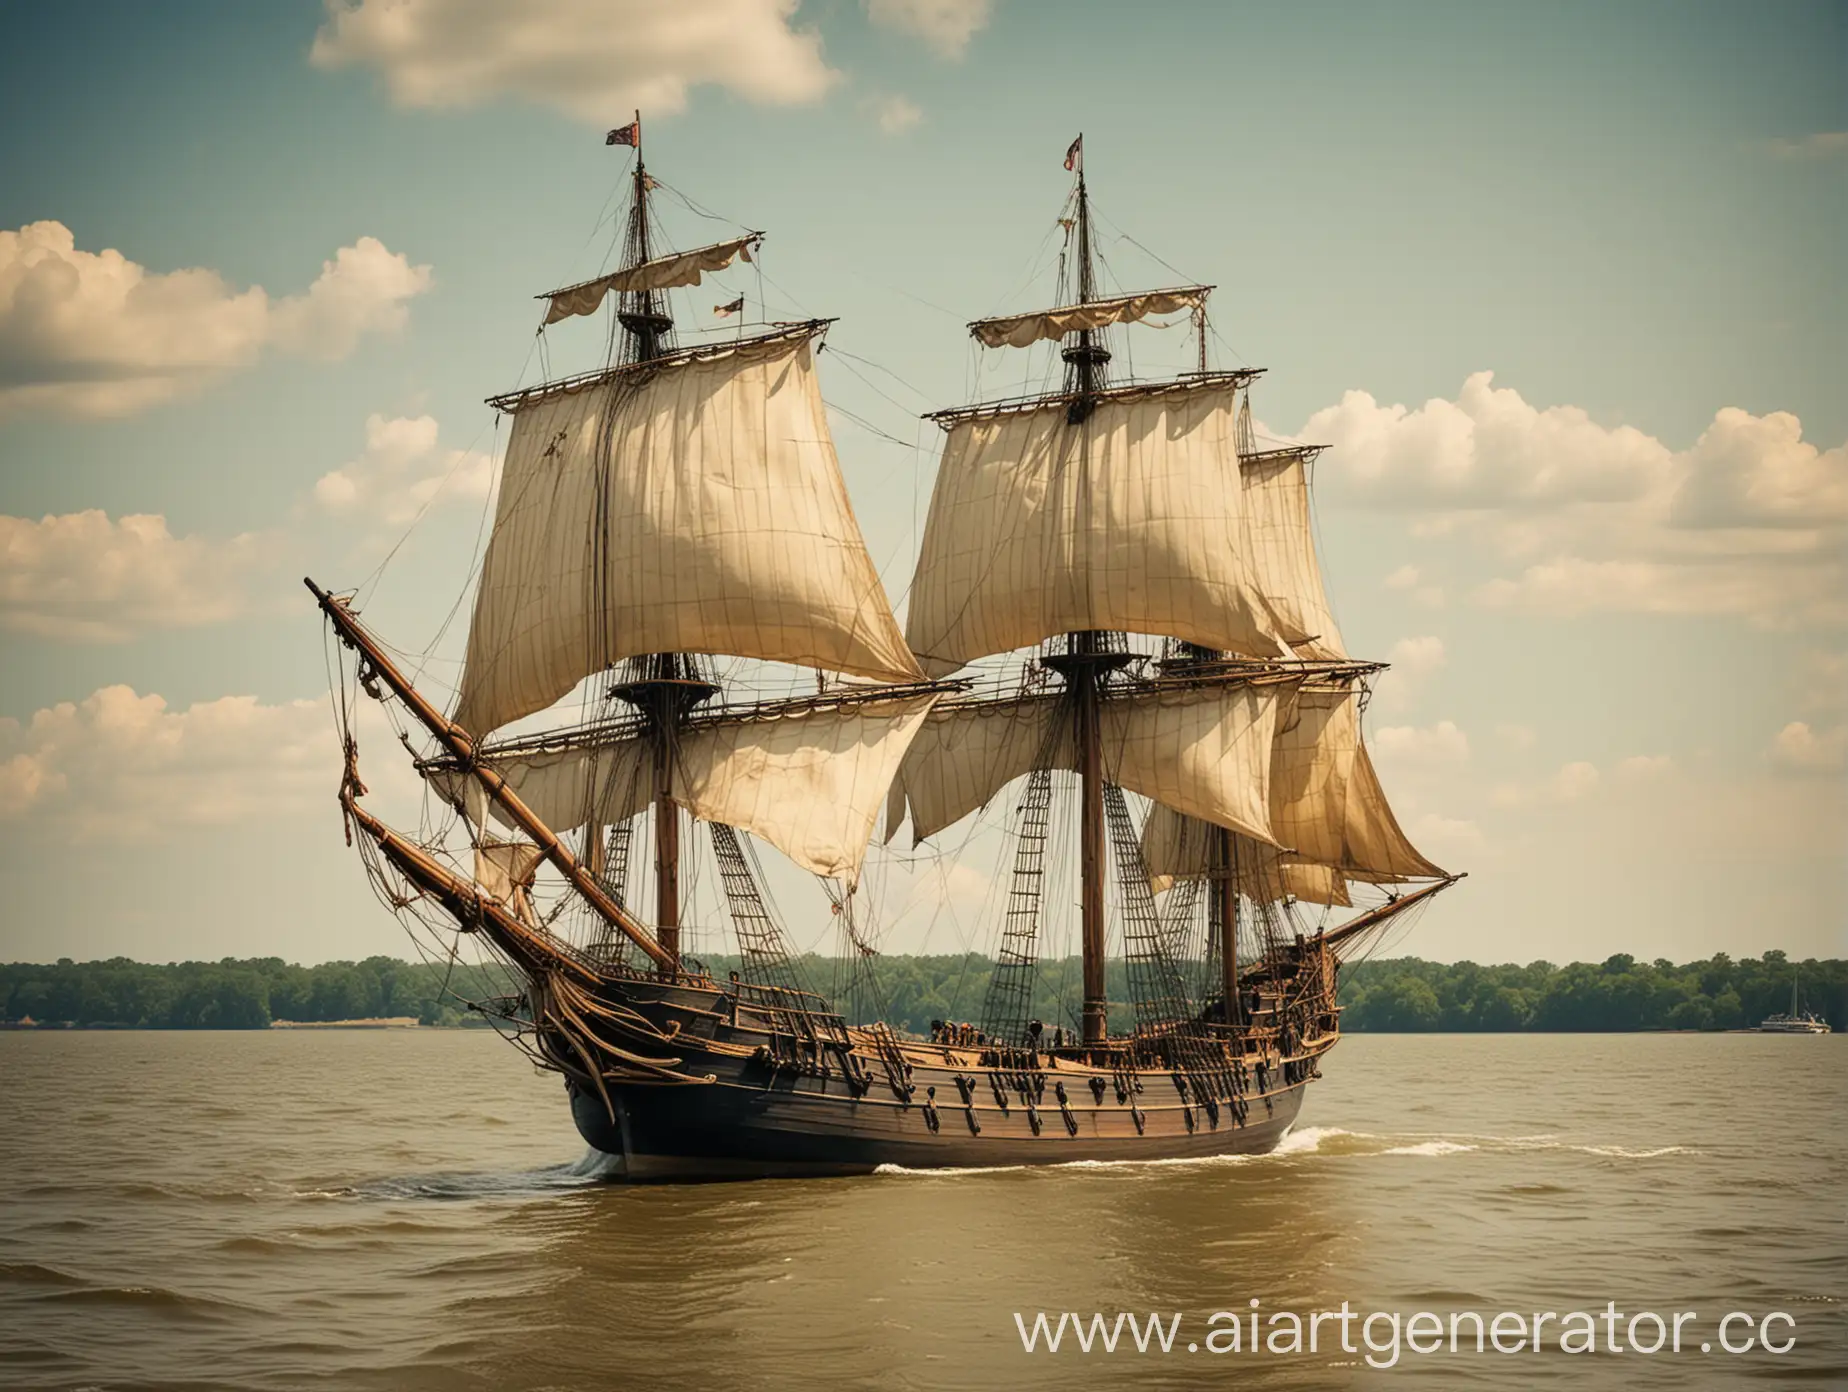 Старый парусный корабль, подплывающий к берегам плодородных земель. Добавь на изображение текст как в рекламе об переезде в новый свет Вирджинии на английском языке